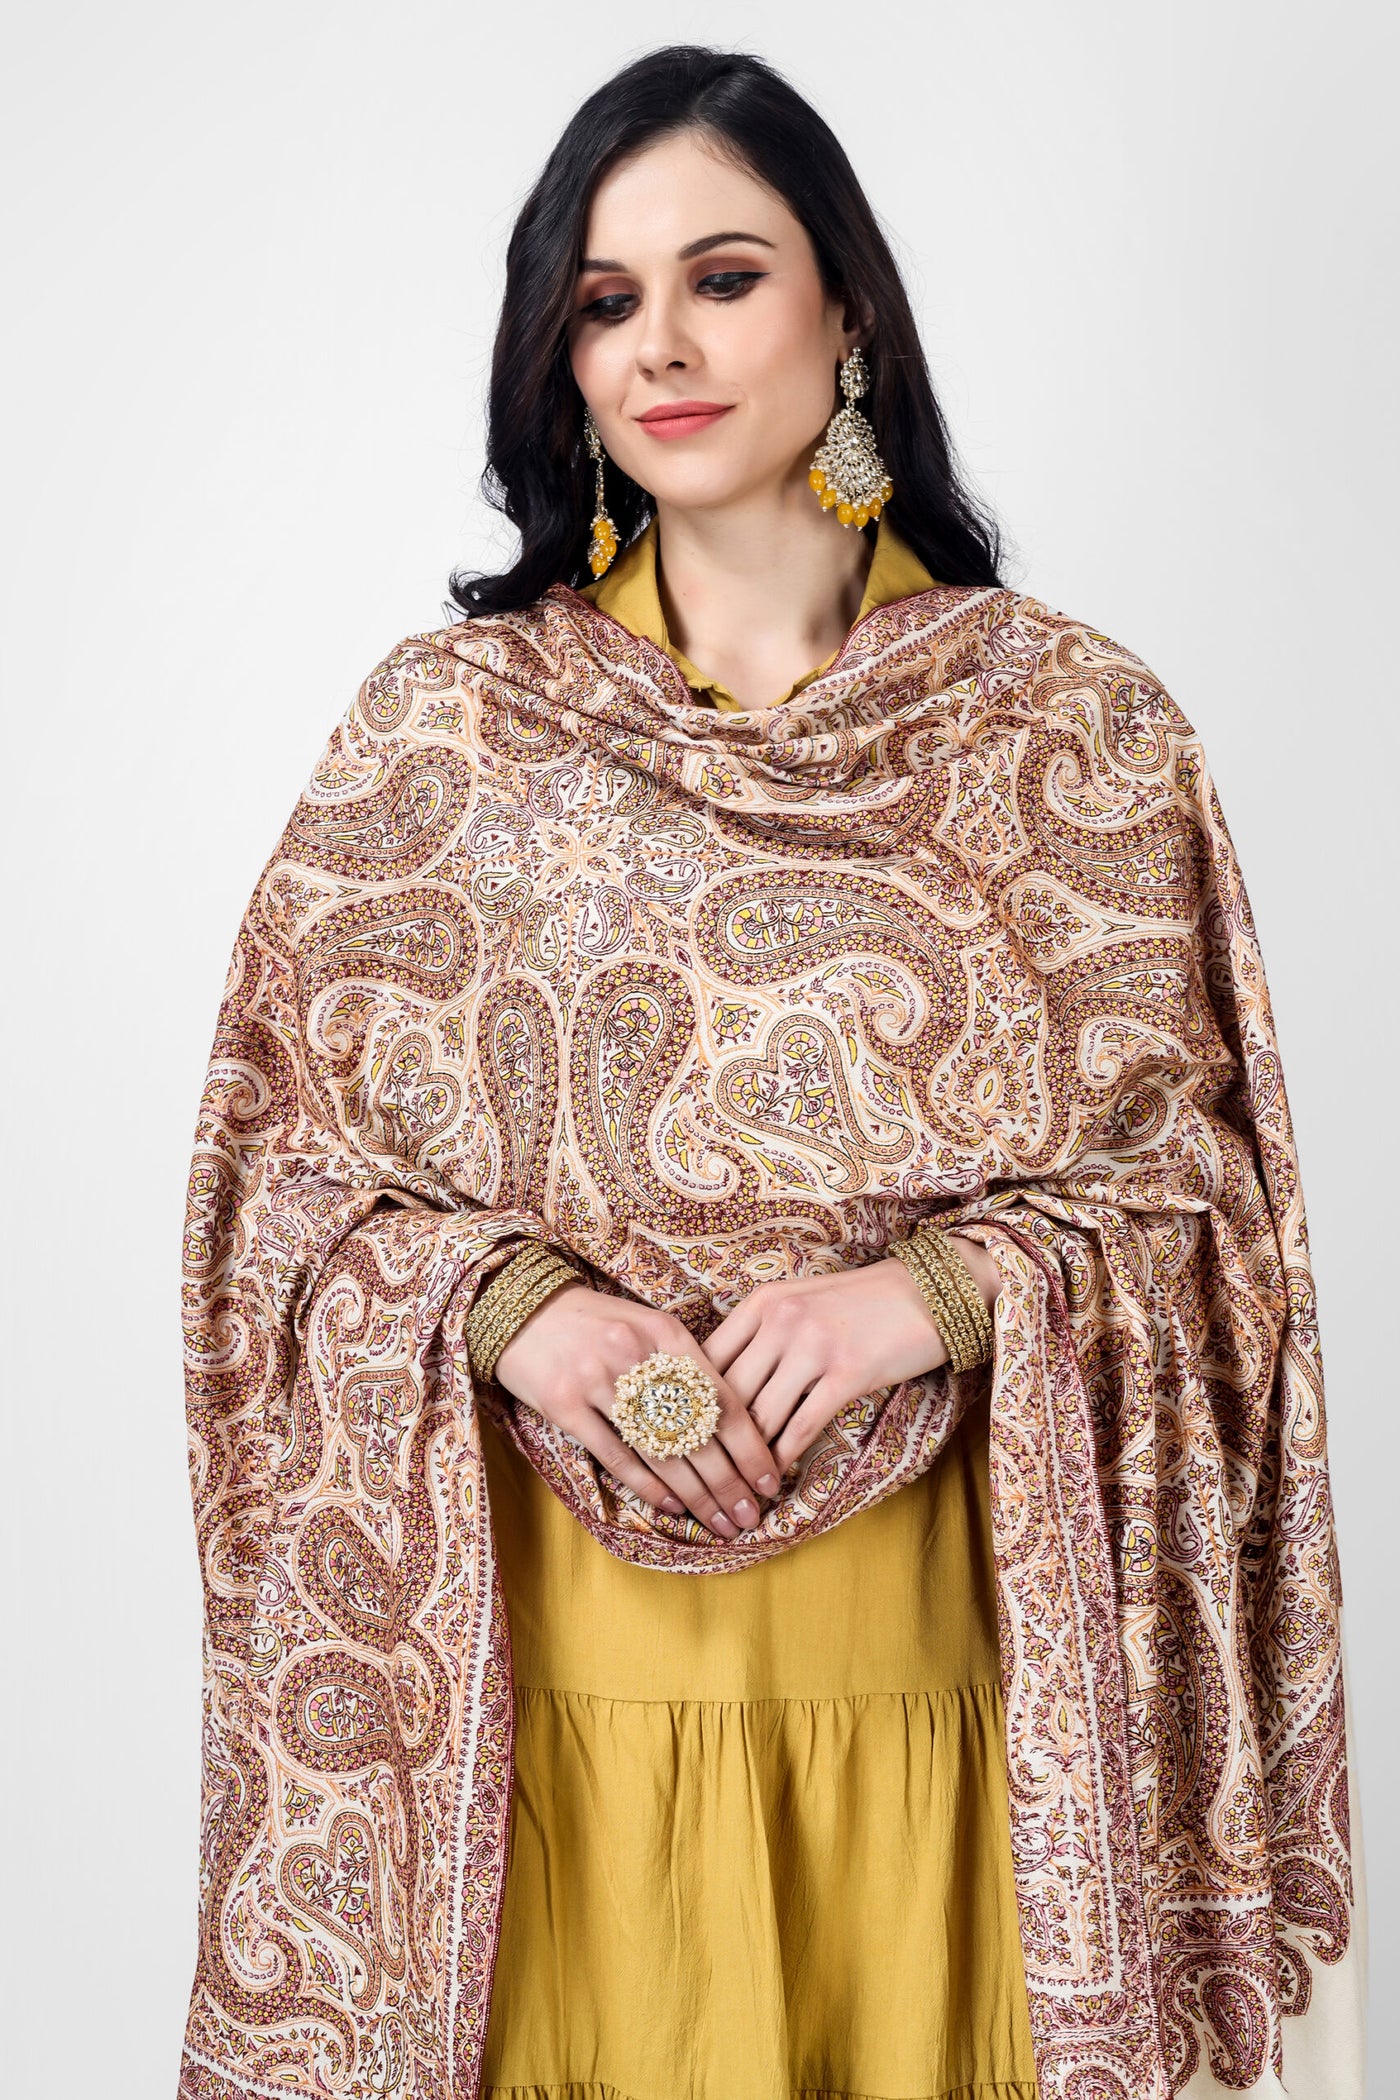 White Pashmina sozni jama badamkar shawl